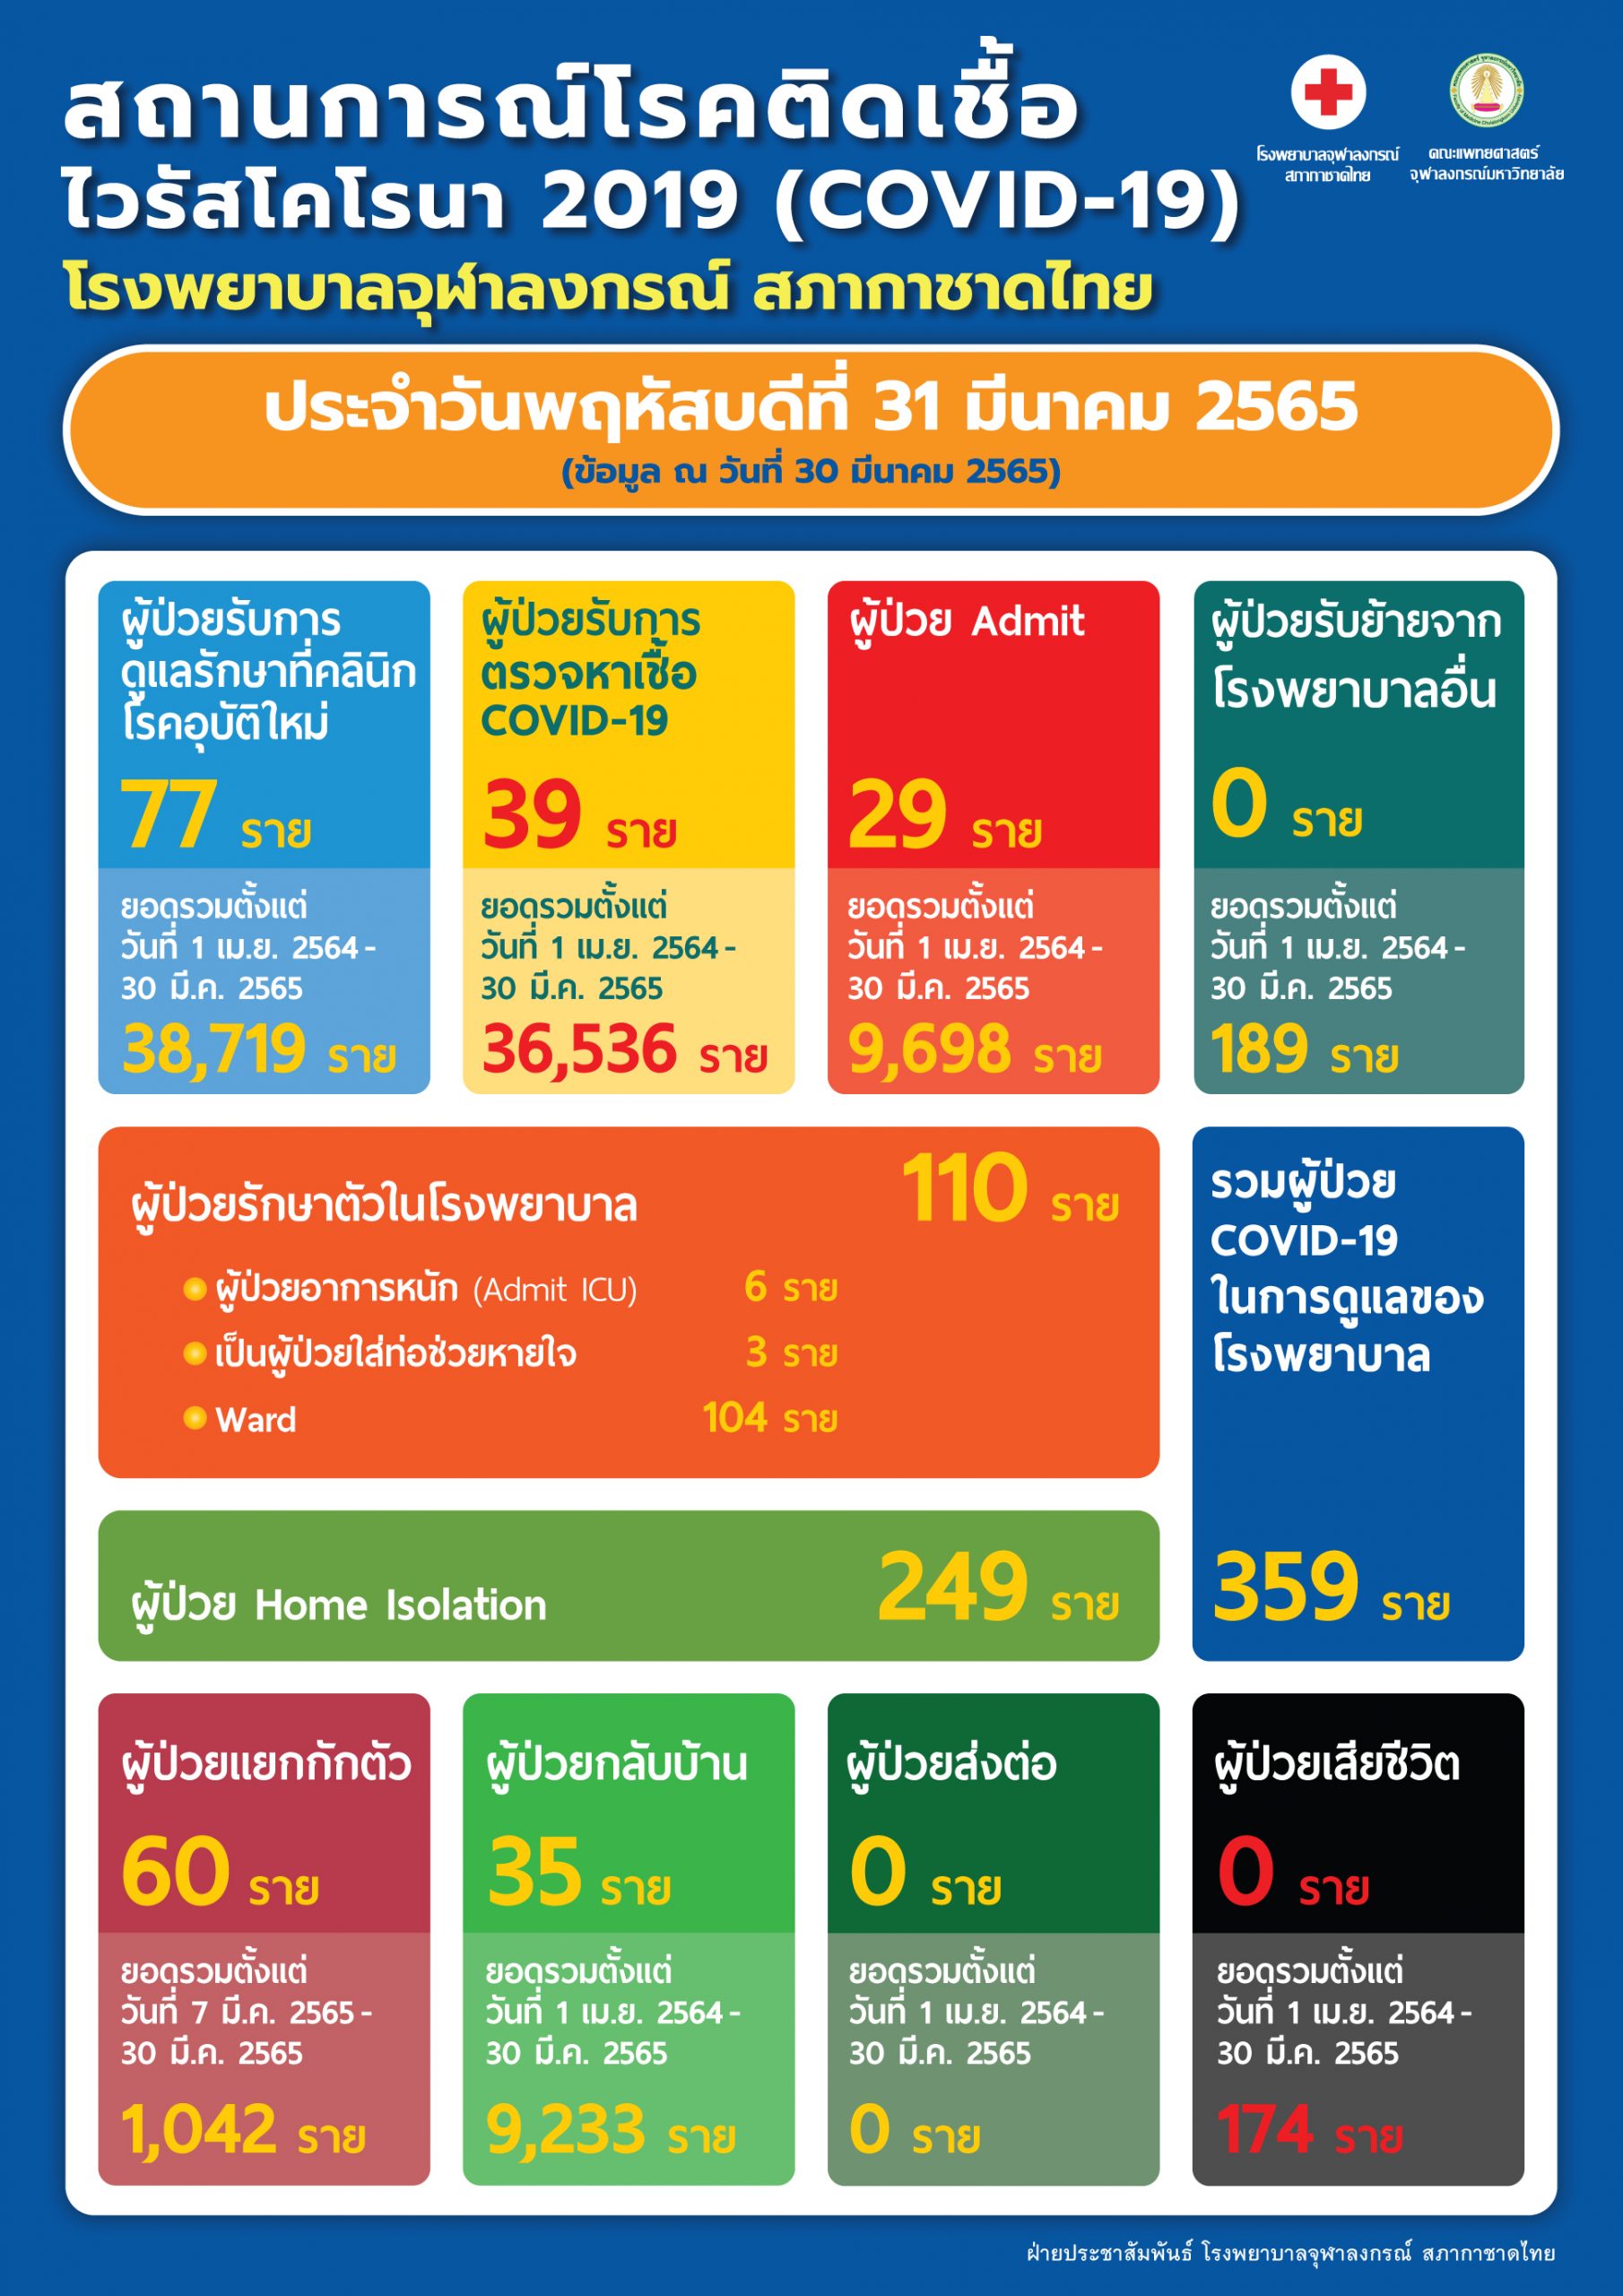 สถานการณ์โรคติดเชื้อไวรัสโคโรนา 2019 (COVID-19) โรงพยาบาลจุฬาลงกรณ์ สภากาชาดไทย ประจำวันพฤหัสบดีที่ 31 มีนาคม 2565